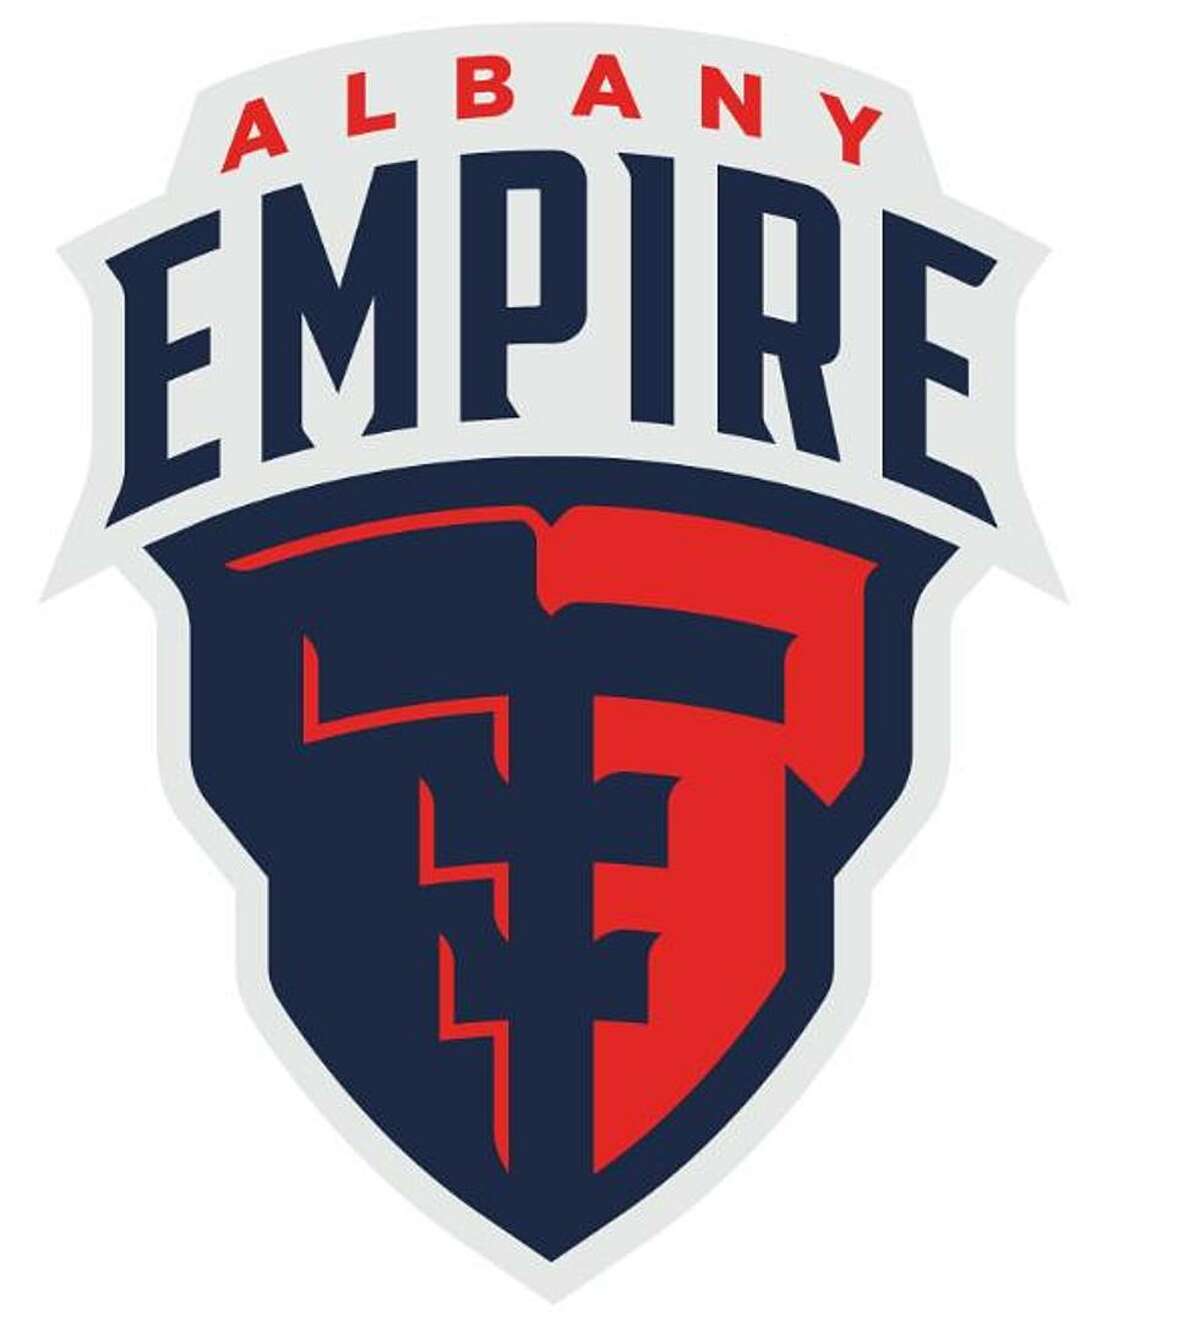 Albany Empire logo.